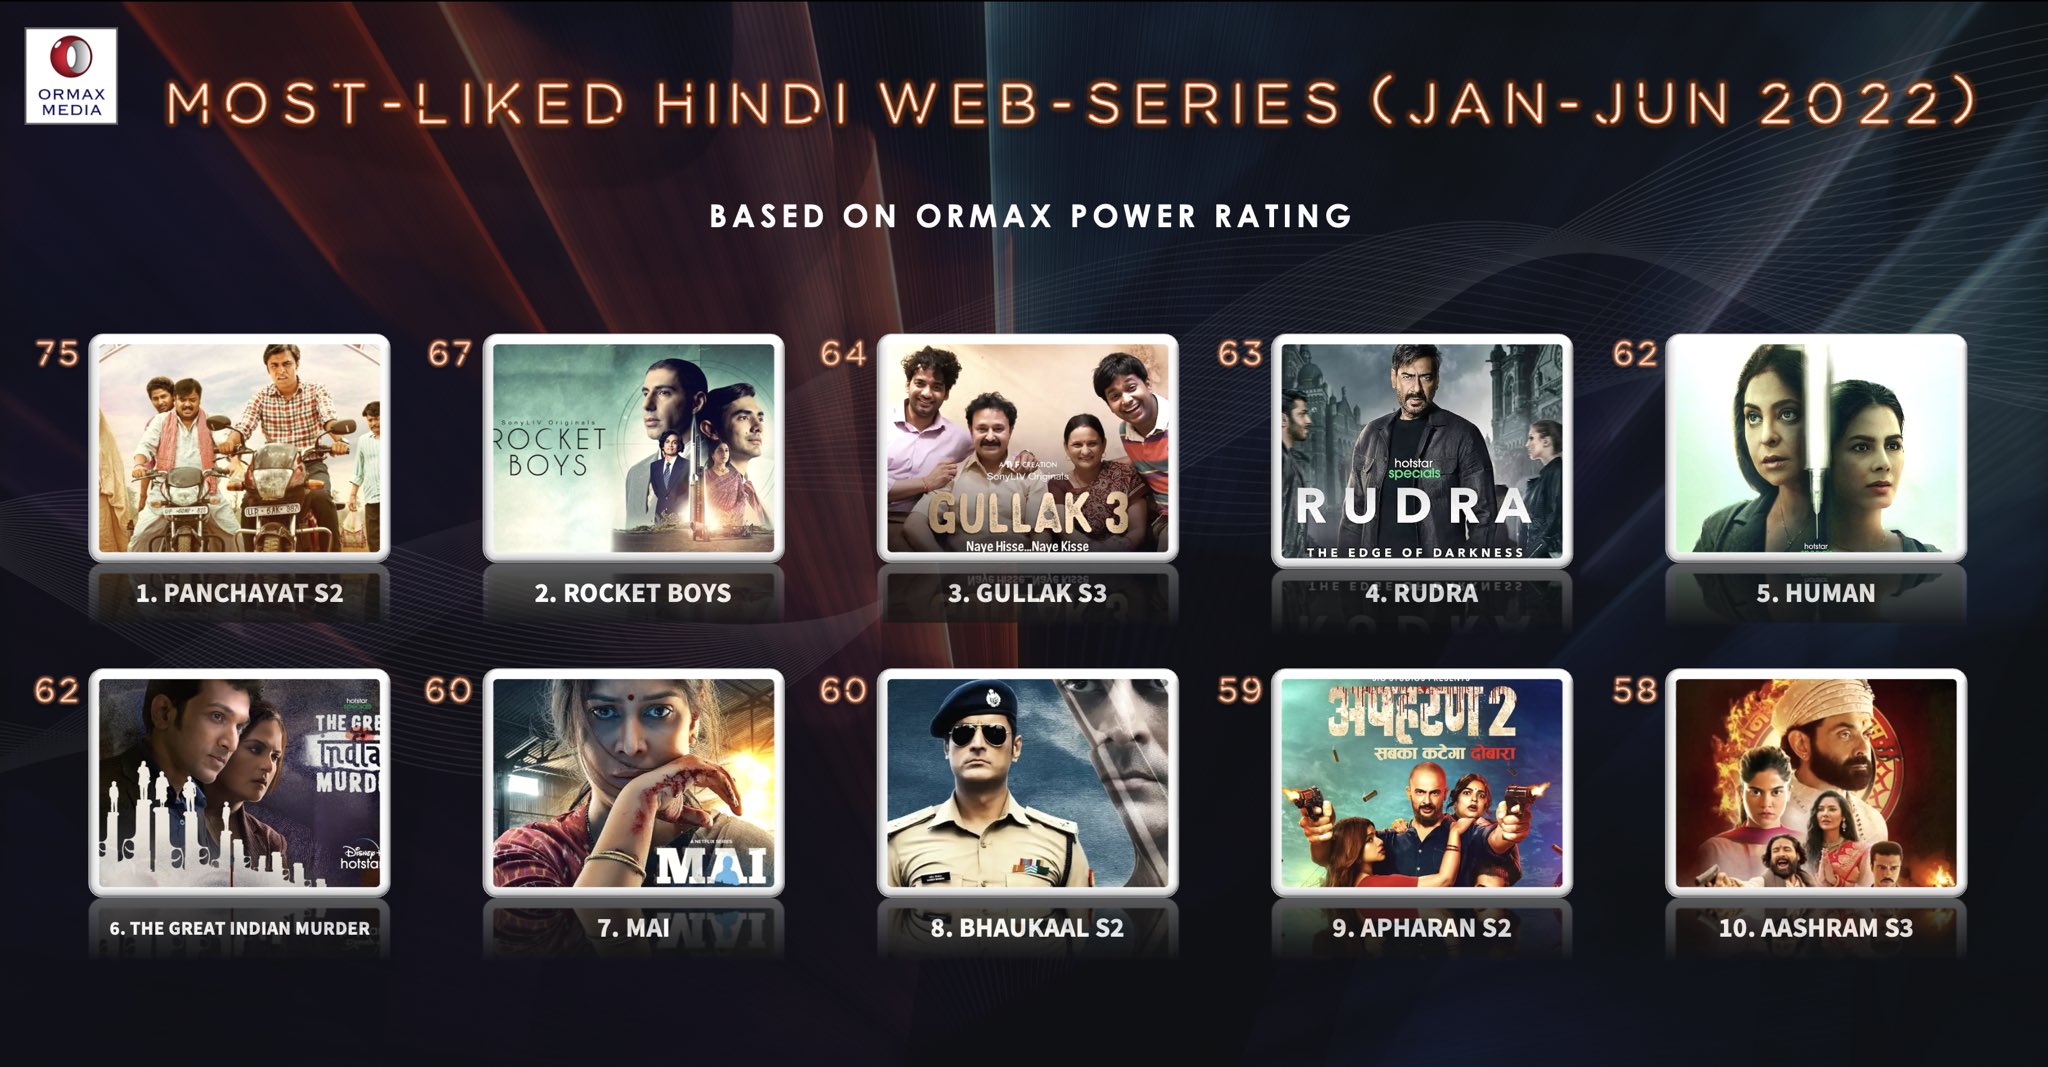 Top 10 Hindi web-series according to Ormax Media's stats.